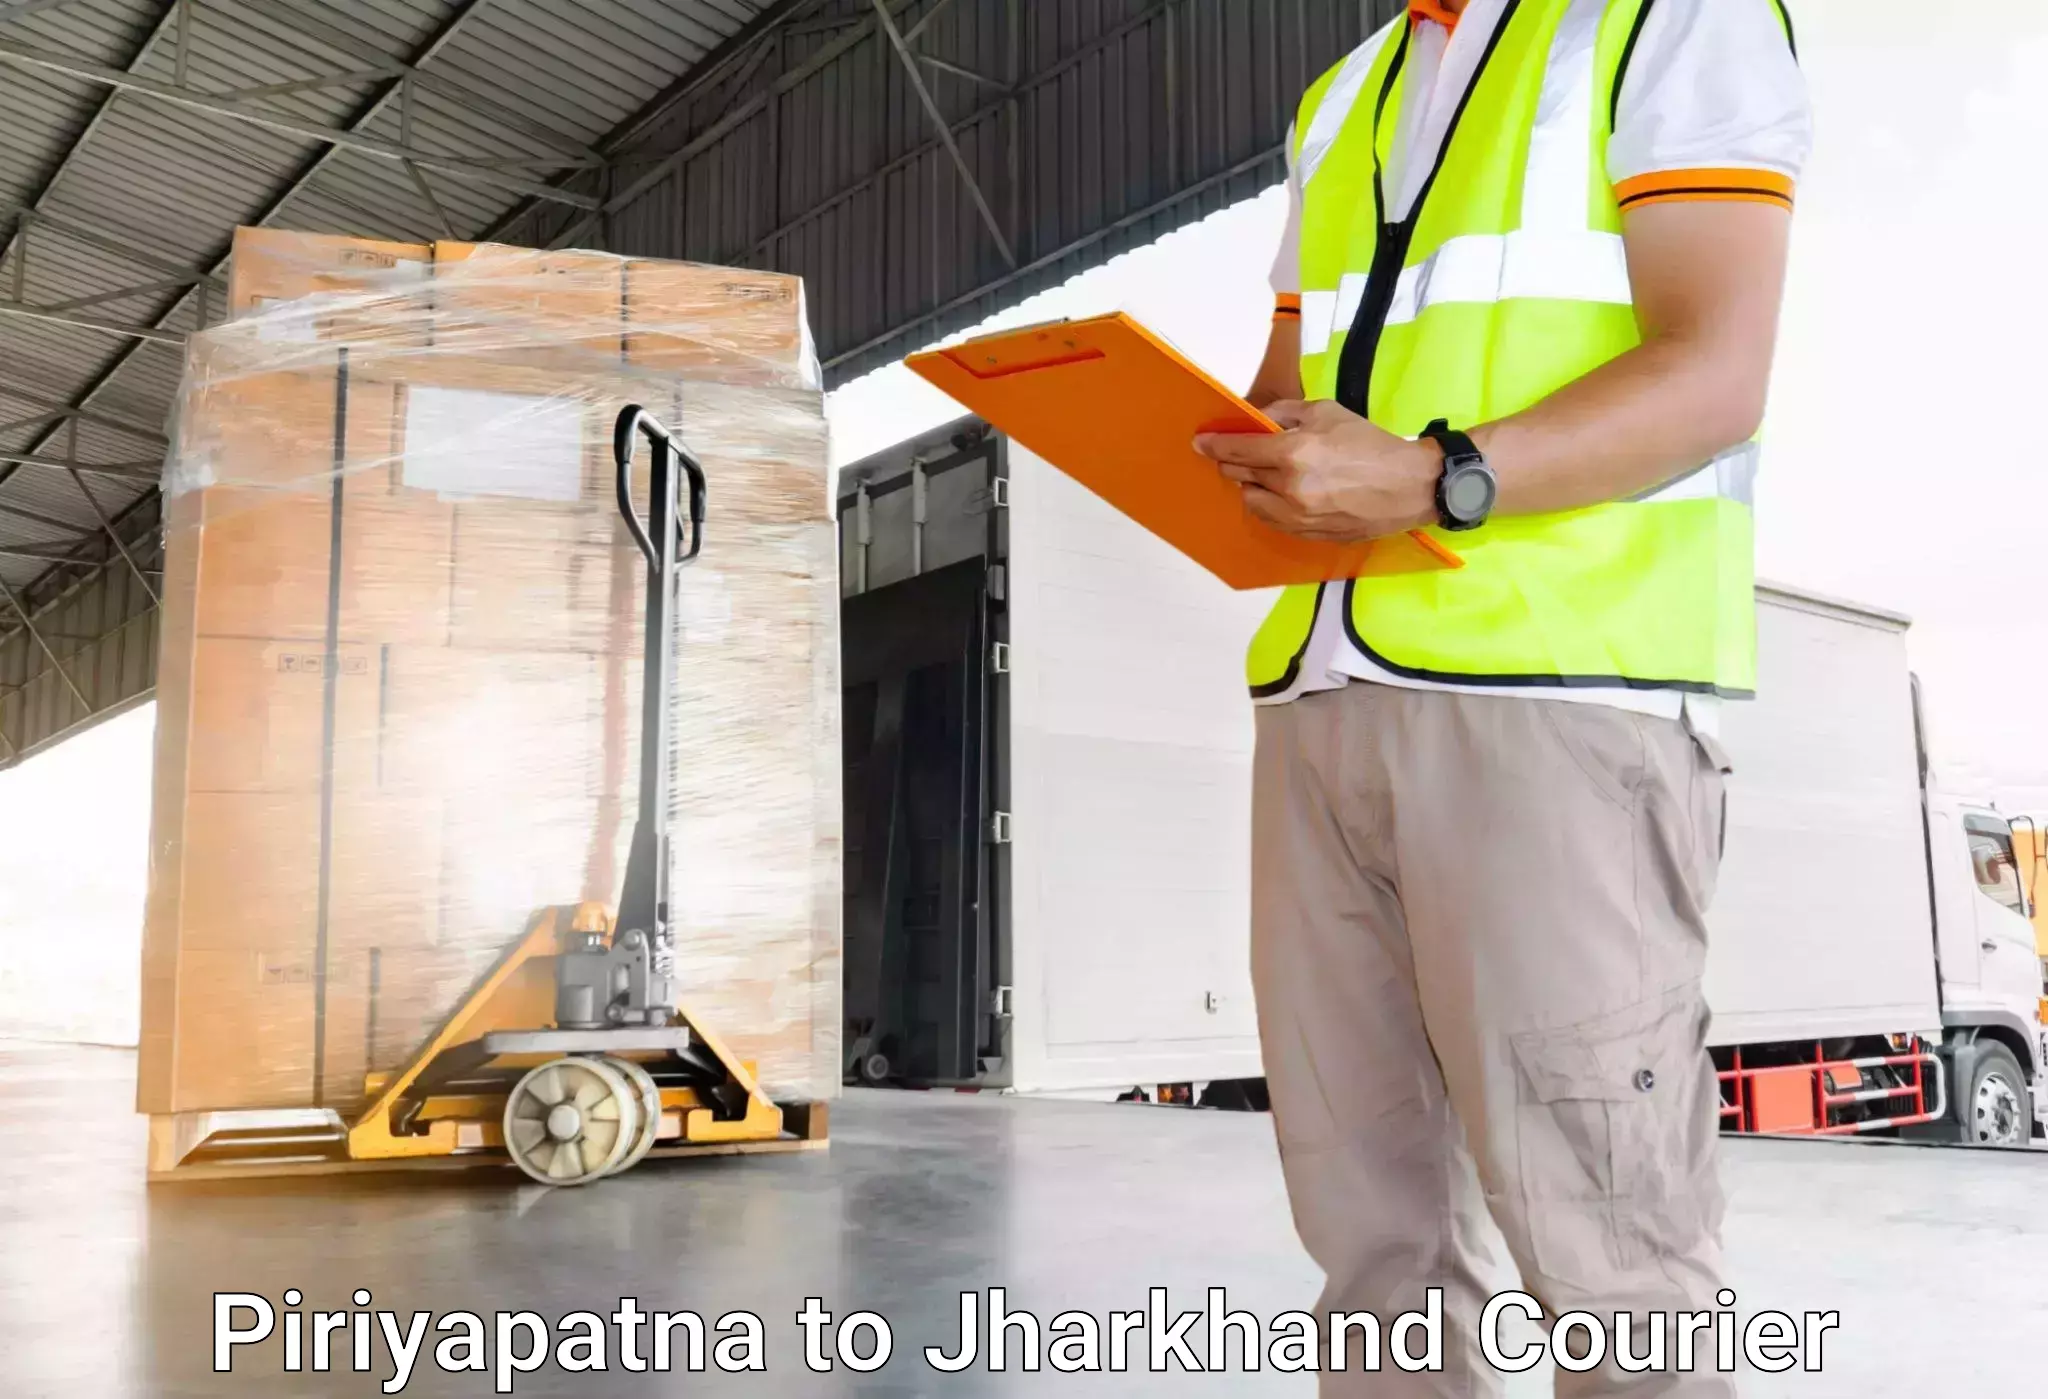 Express luggage delivery Piriyapatna to Chakuliya